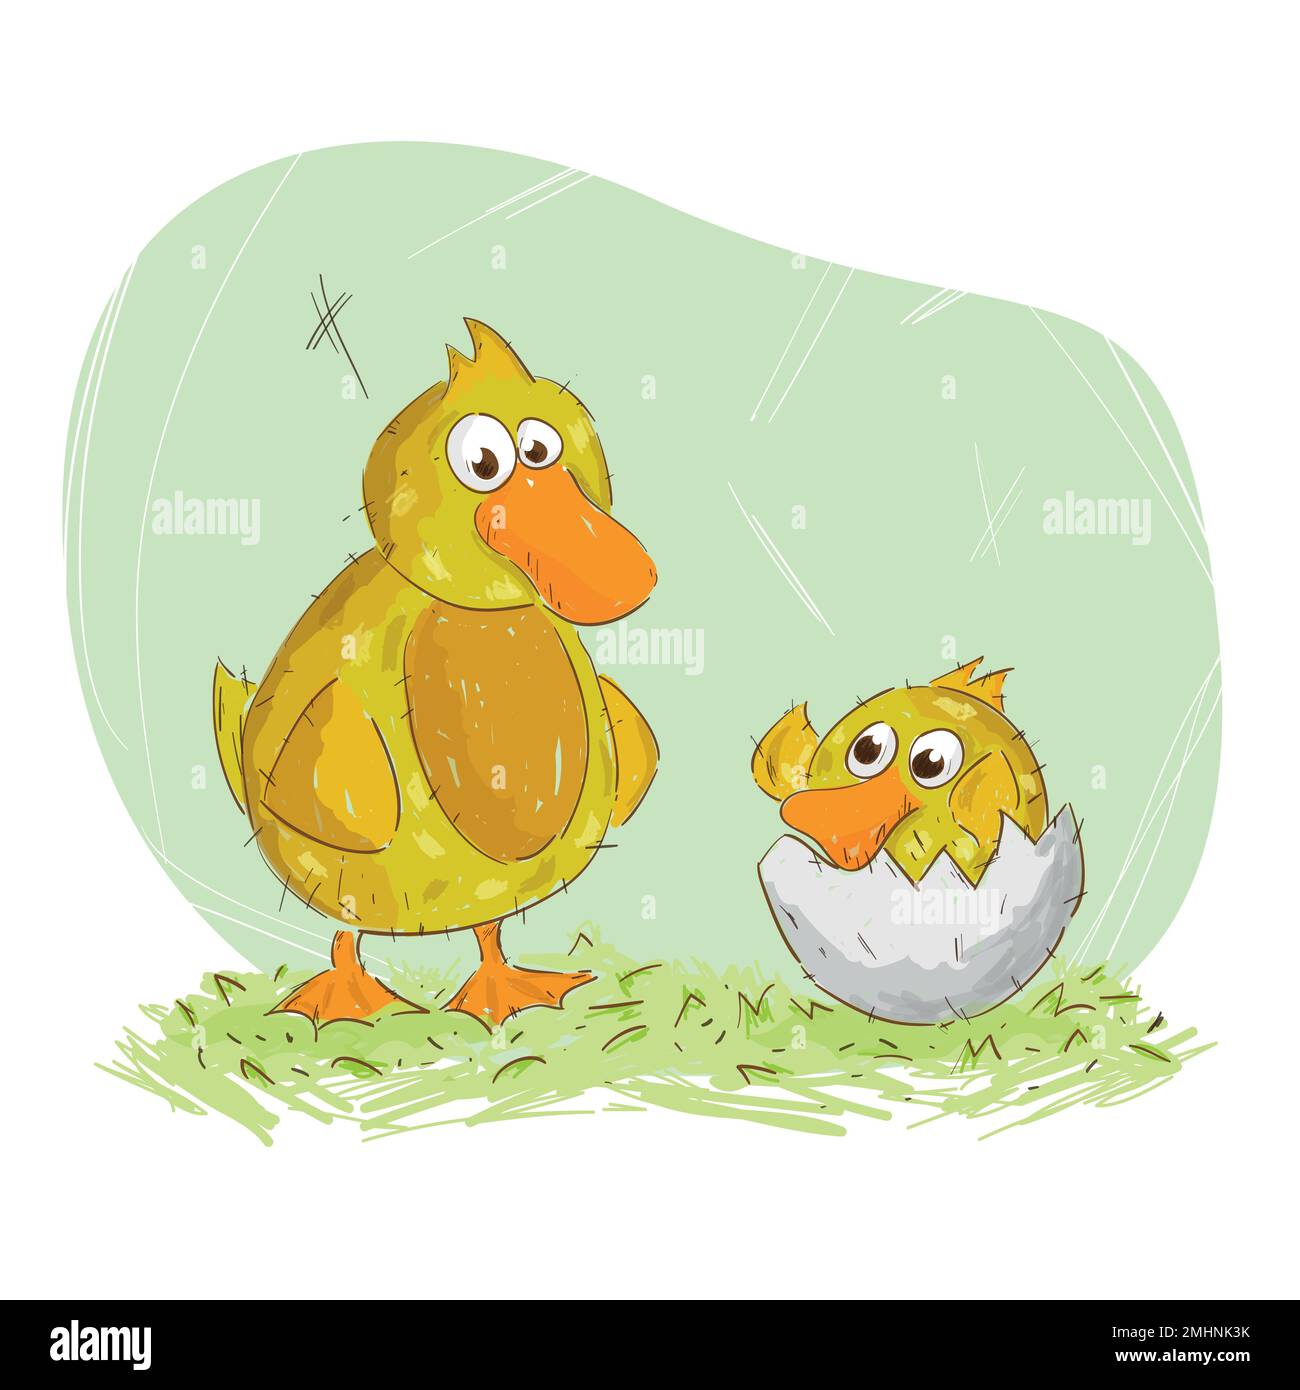 Linda ilustración vectorial de un padre patito con su bebé recién nacido dentro de la cáscara del huevo. El patito bebé le pide al padre que lo recoja. El d. Del padre Ilustración del Vector